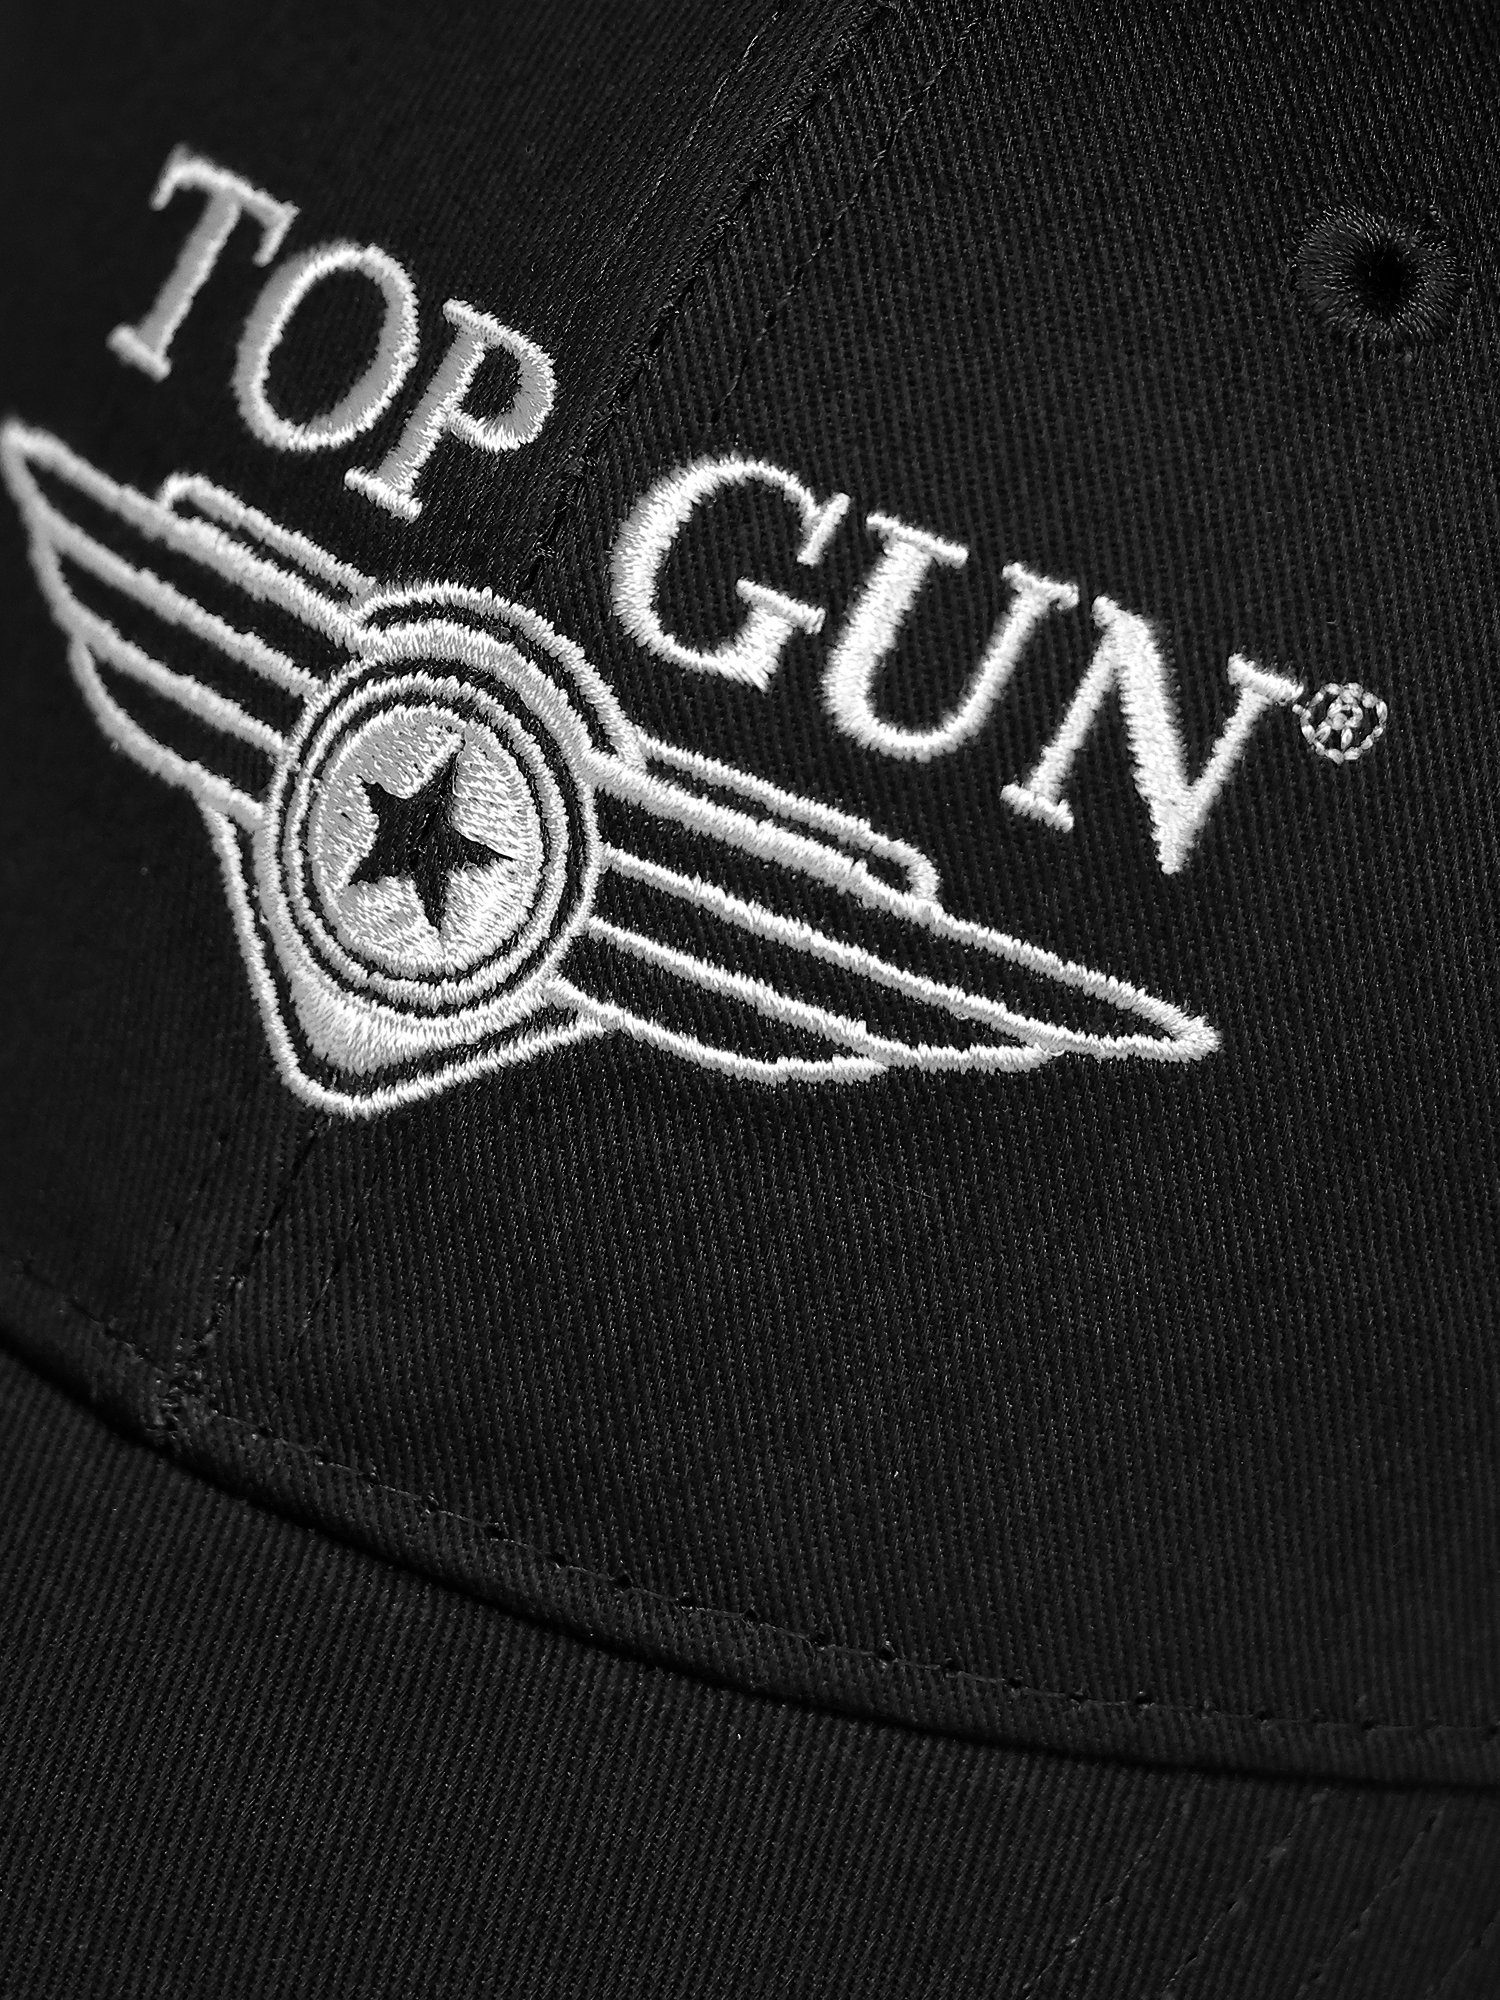 GUN TOP Snapback TG22013 schwarz Cap